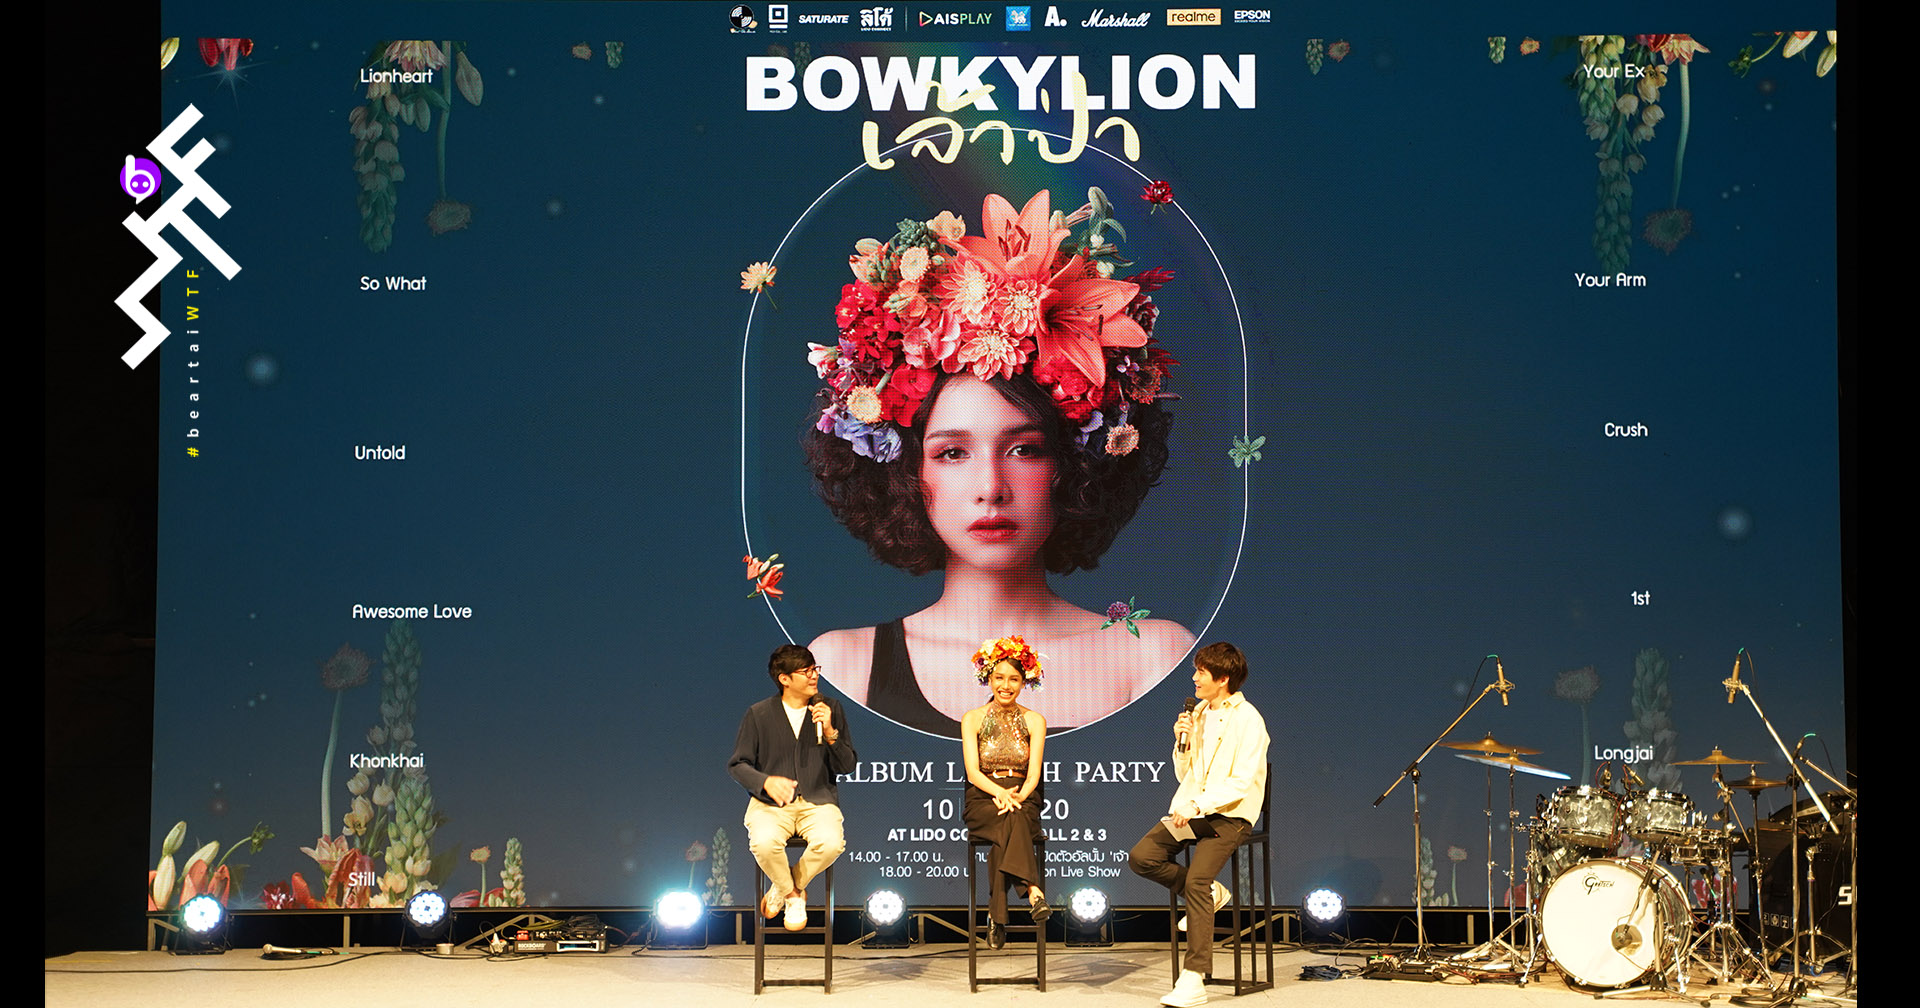 เก๋กรุบ! Bowkylion เปิดตัวอัลบั้มแรก “Lionheart” พร้อมงานนิทรรศการศิลปะสุดเท่ “The Forest Exhibition”